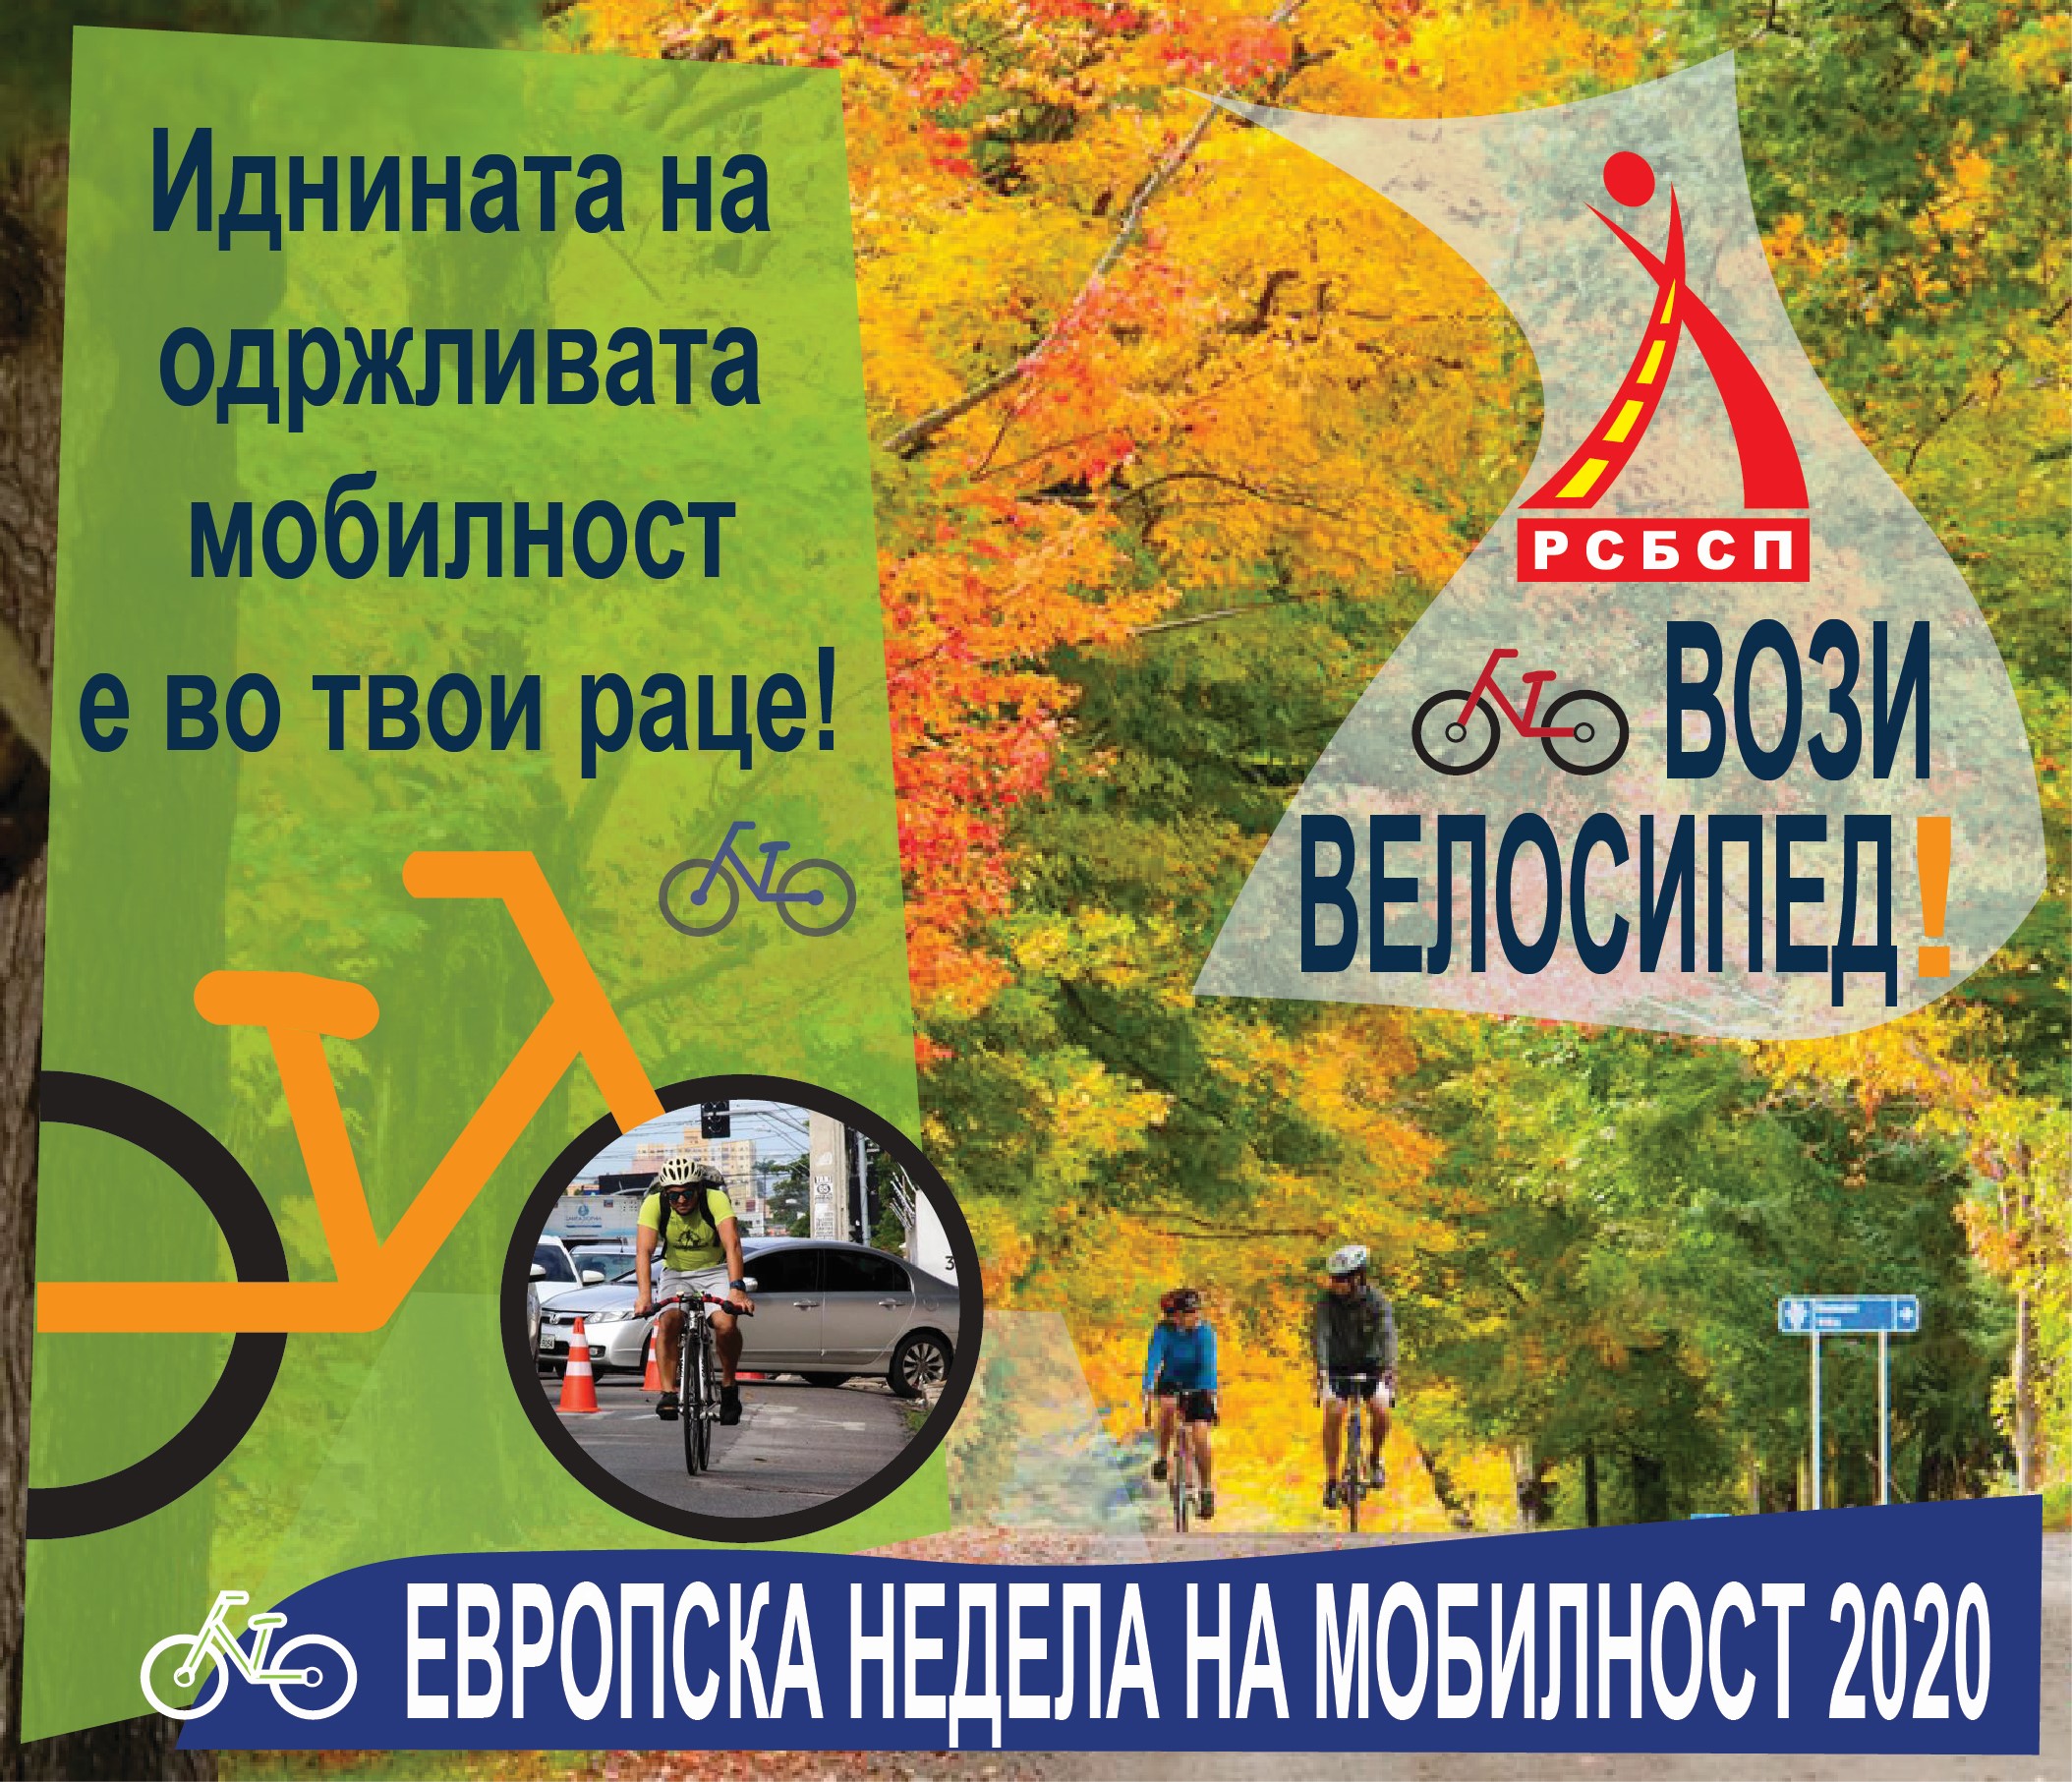 Европска недела на мобилност 2020: Вози Велосипед!